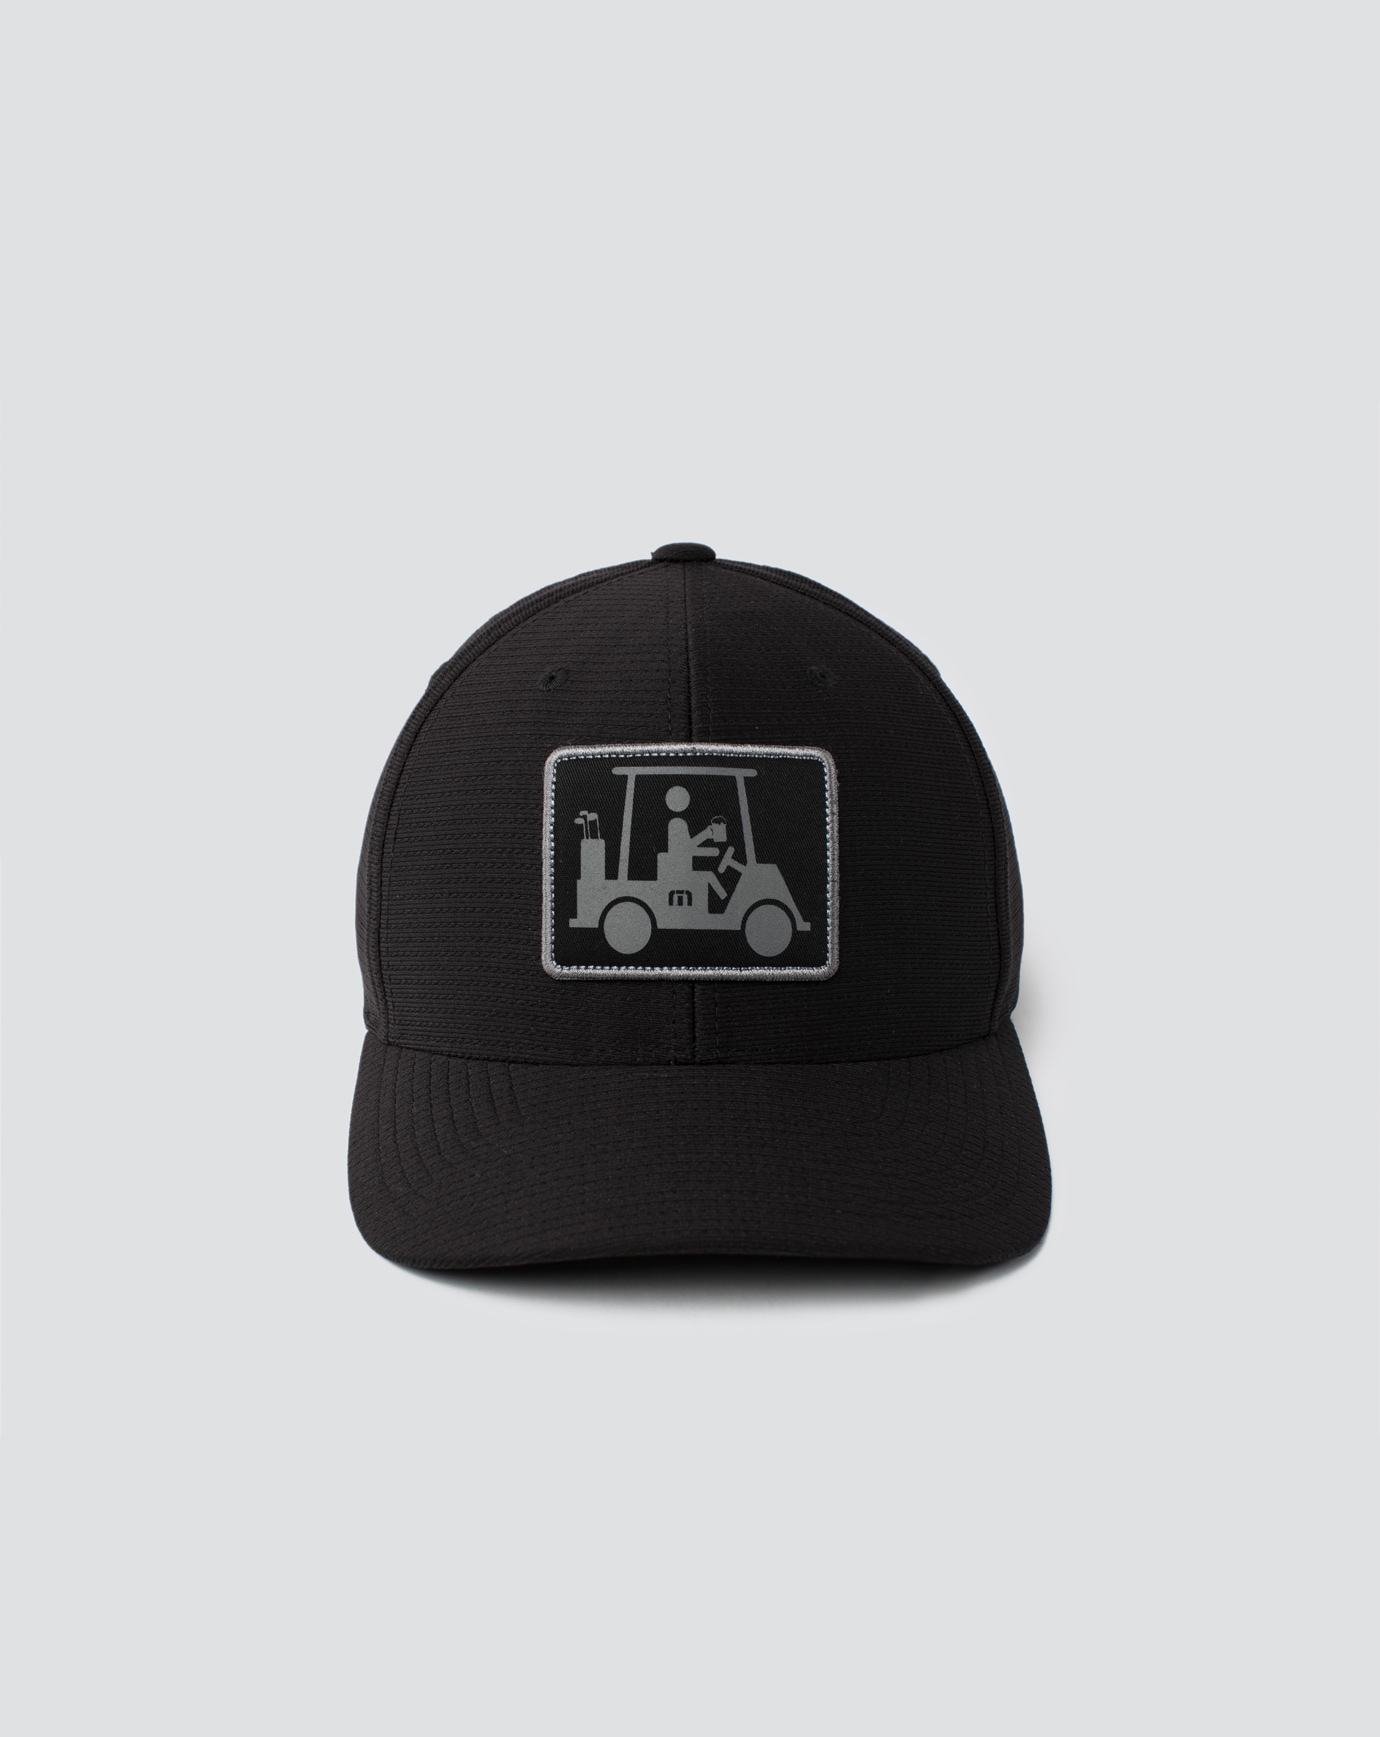 Related Product - EL CAPITAN SNAPBACK HAT